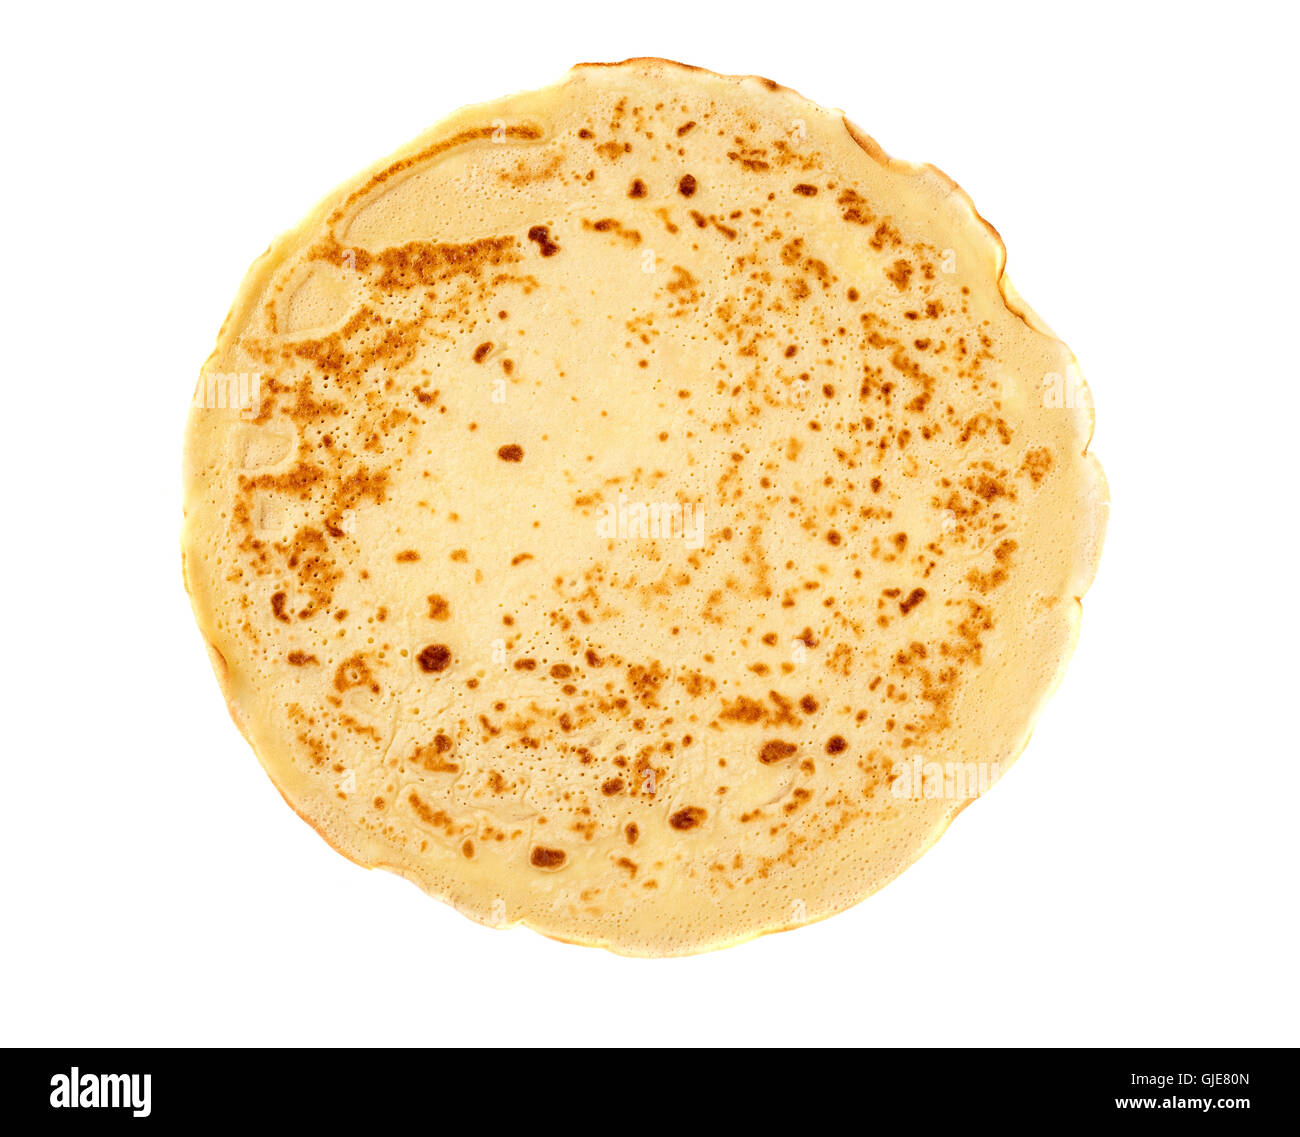 https://c8.alamy.com/comp/GJE80N/a-single-pancake-isolated-on-white-background-GJE80N.jpg